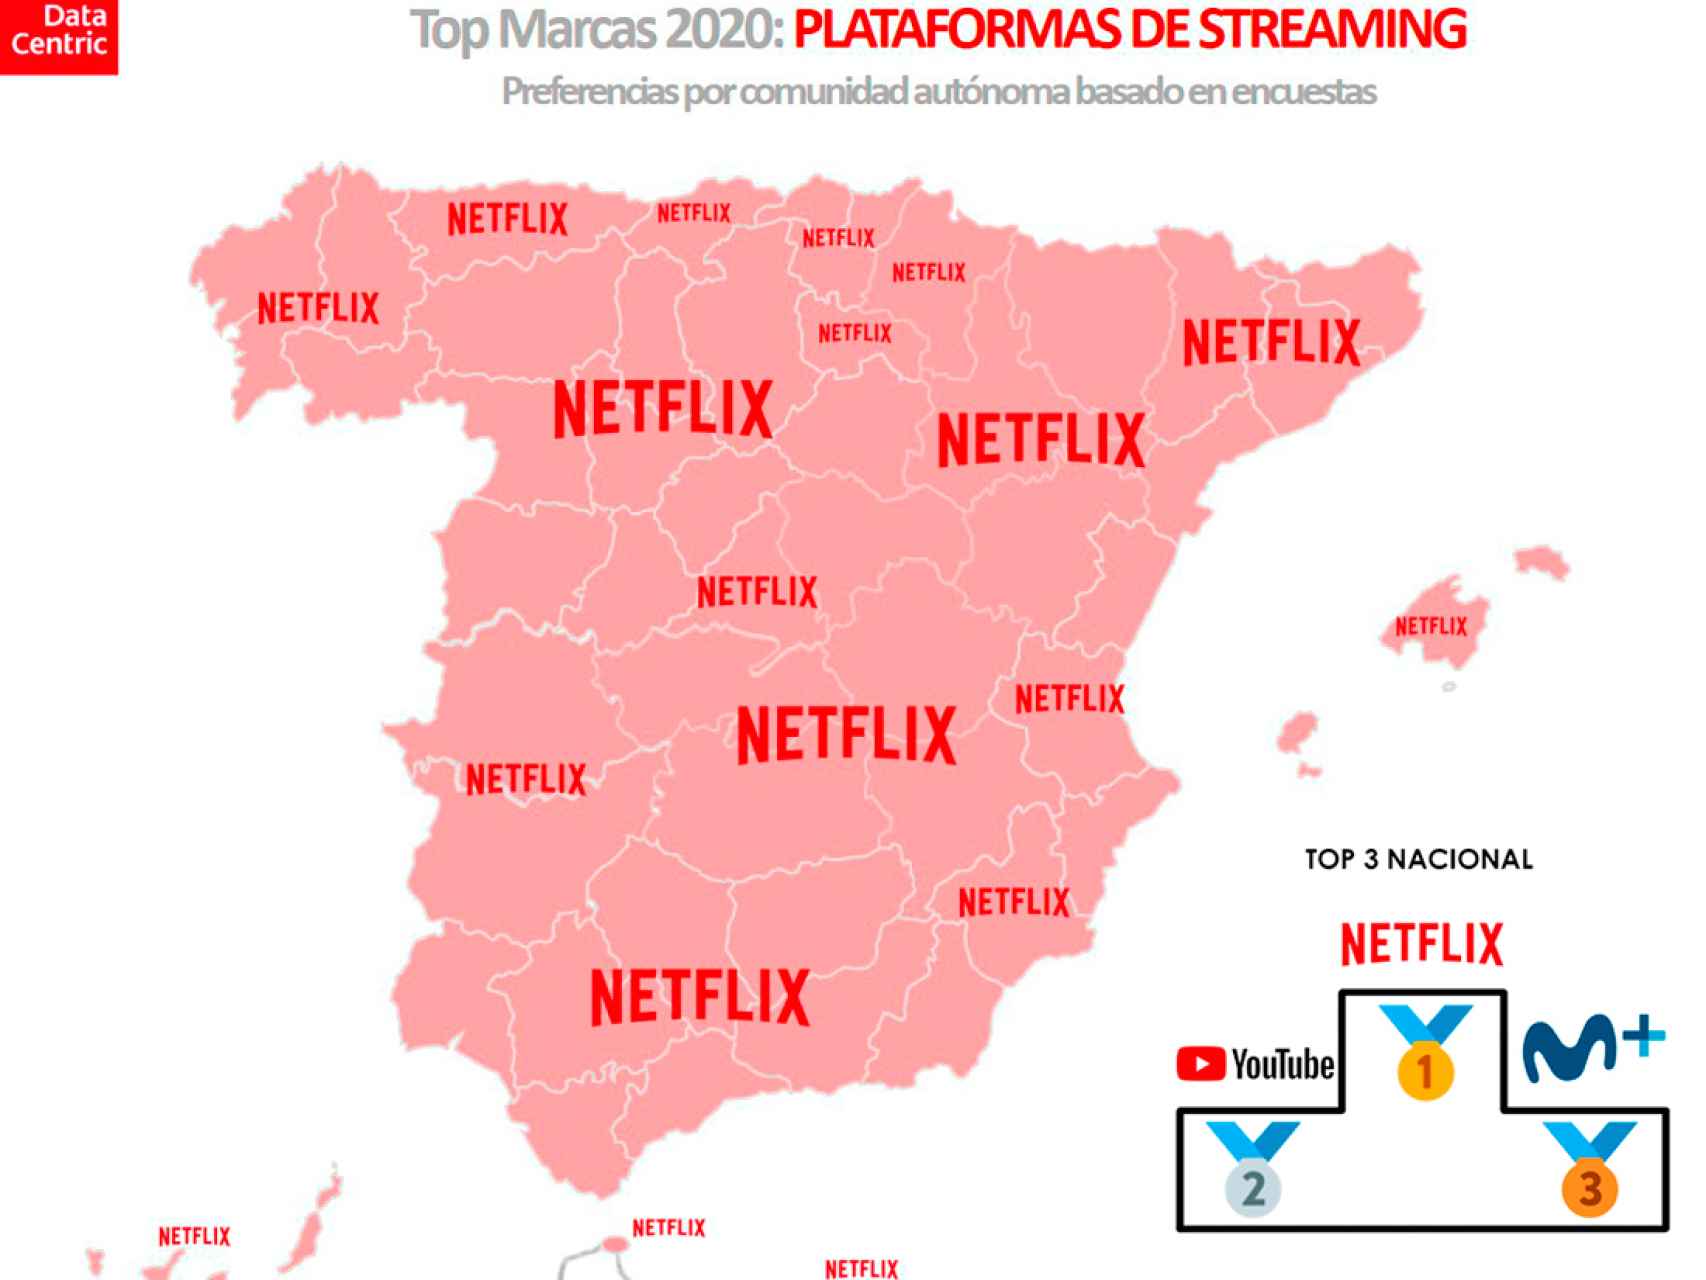 El mapa de las marcas favoritas de plataformas de 'streaming' en España en 2020.